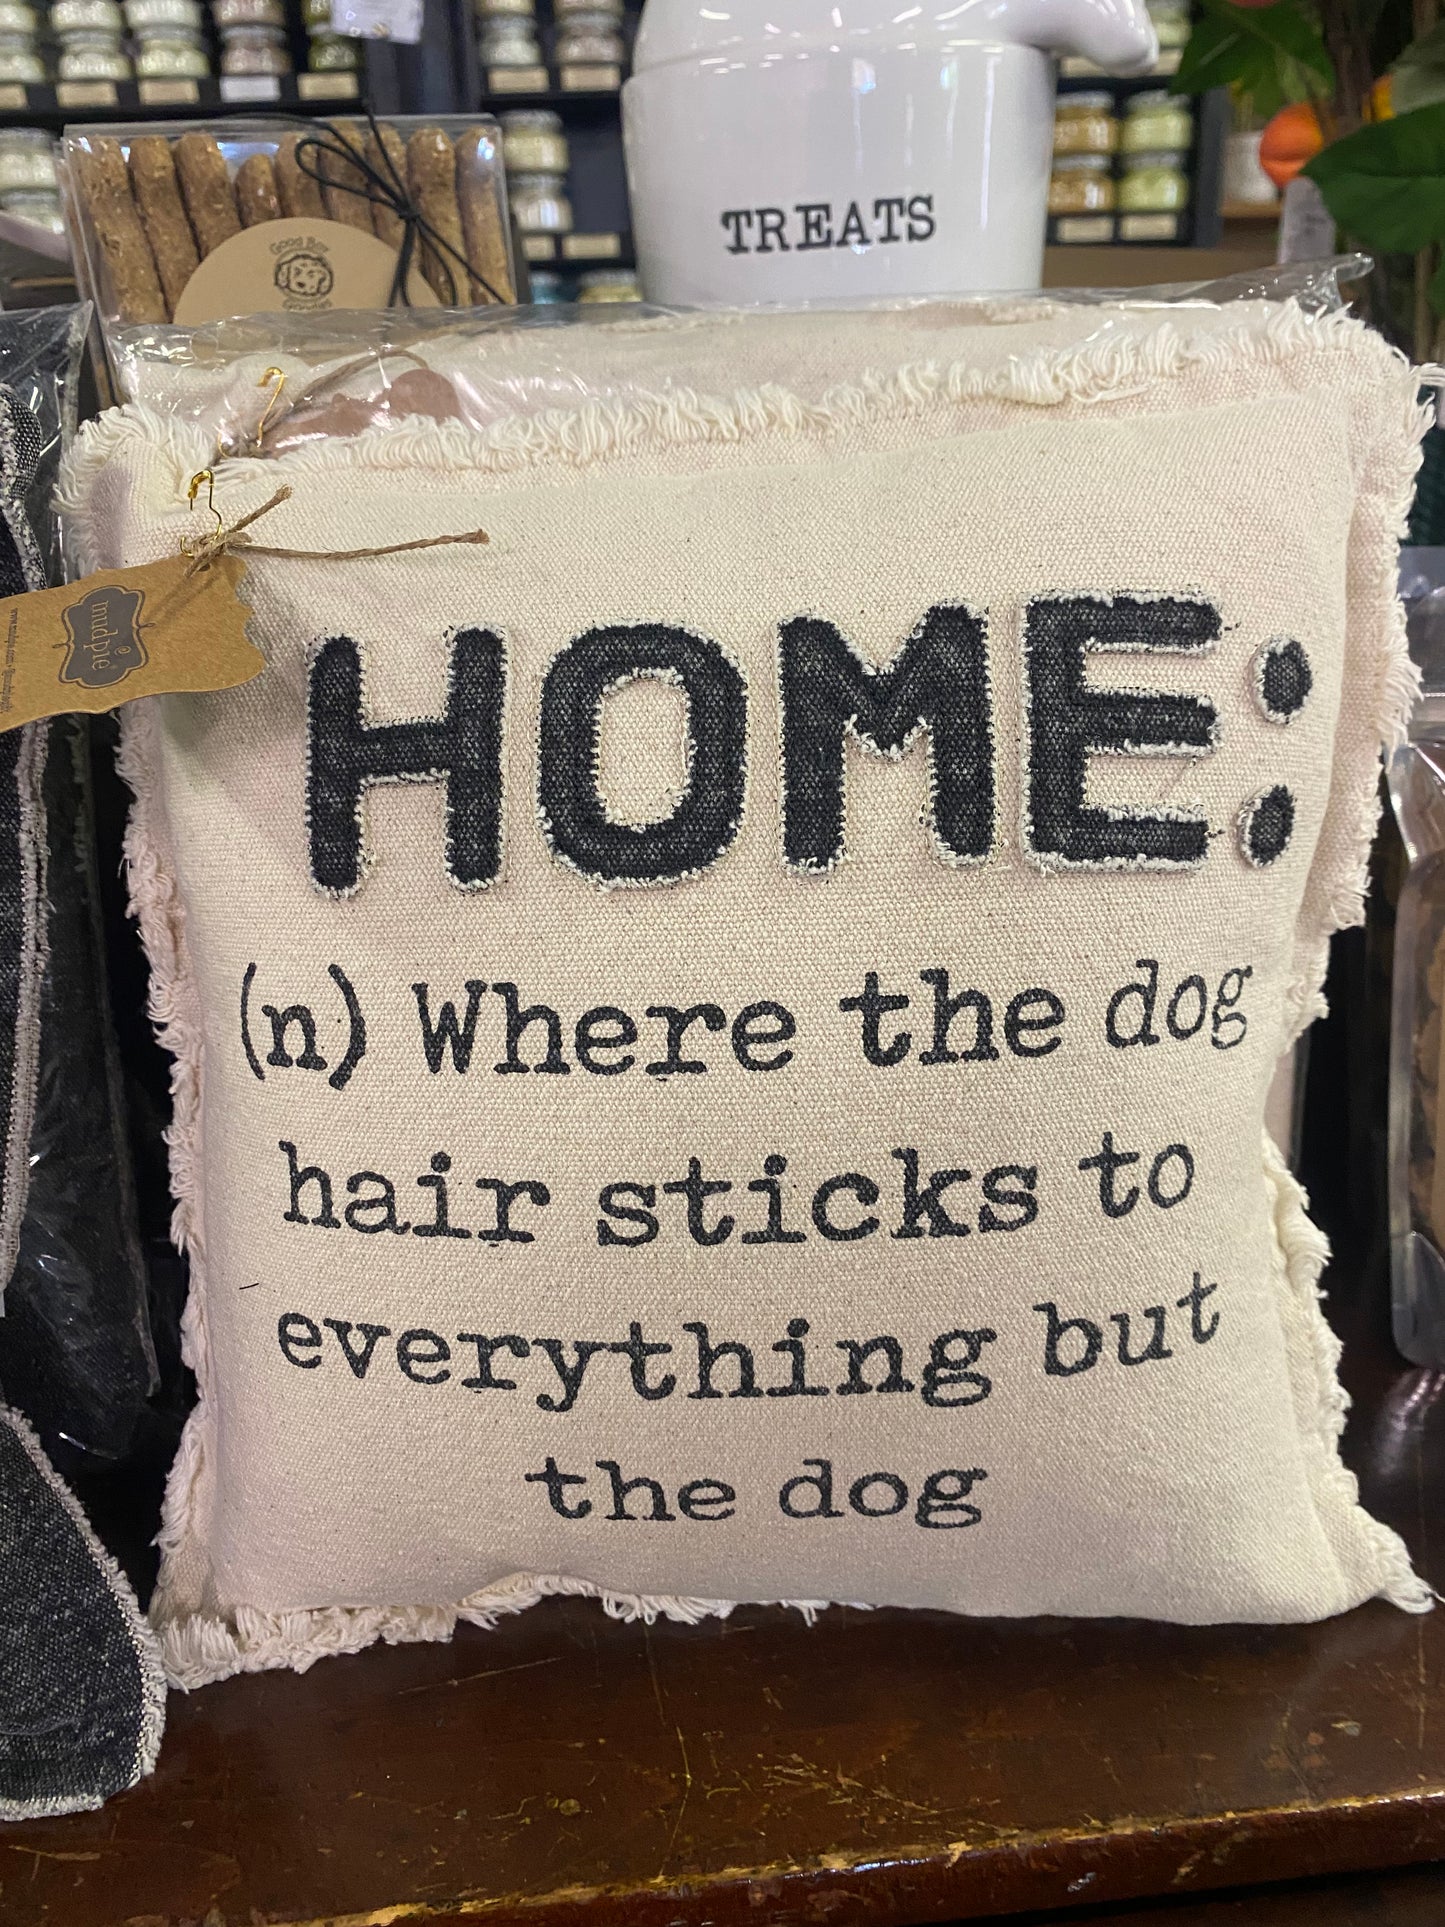 Home Dog Pillows